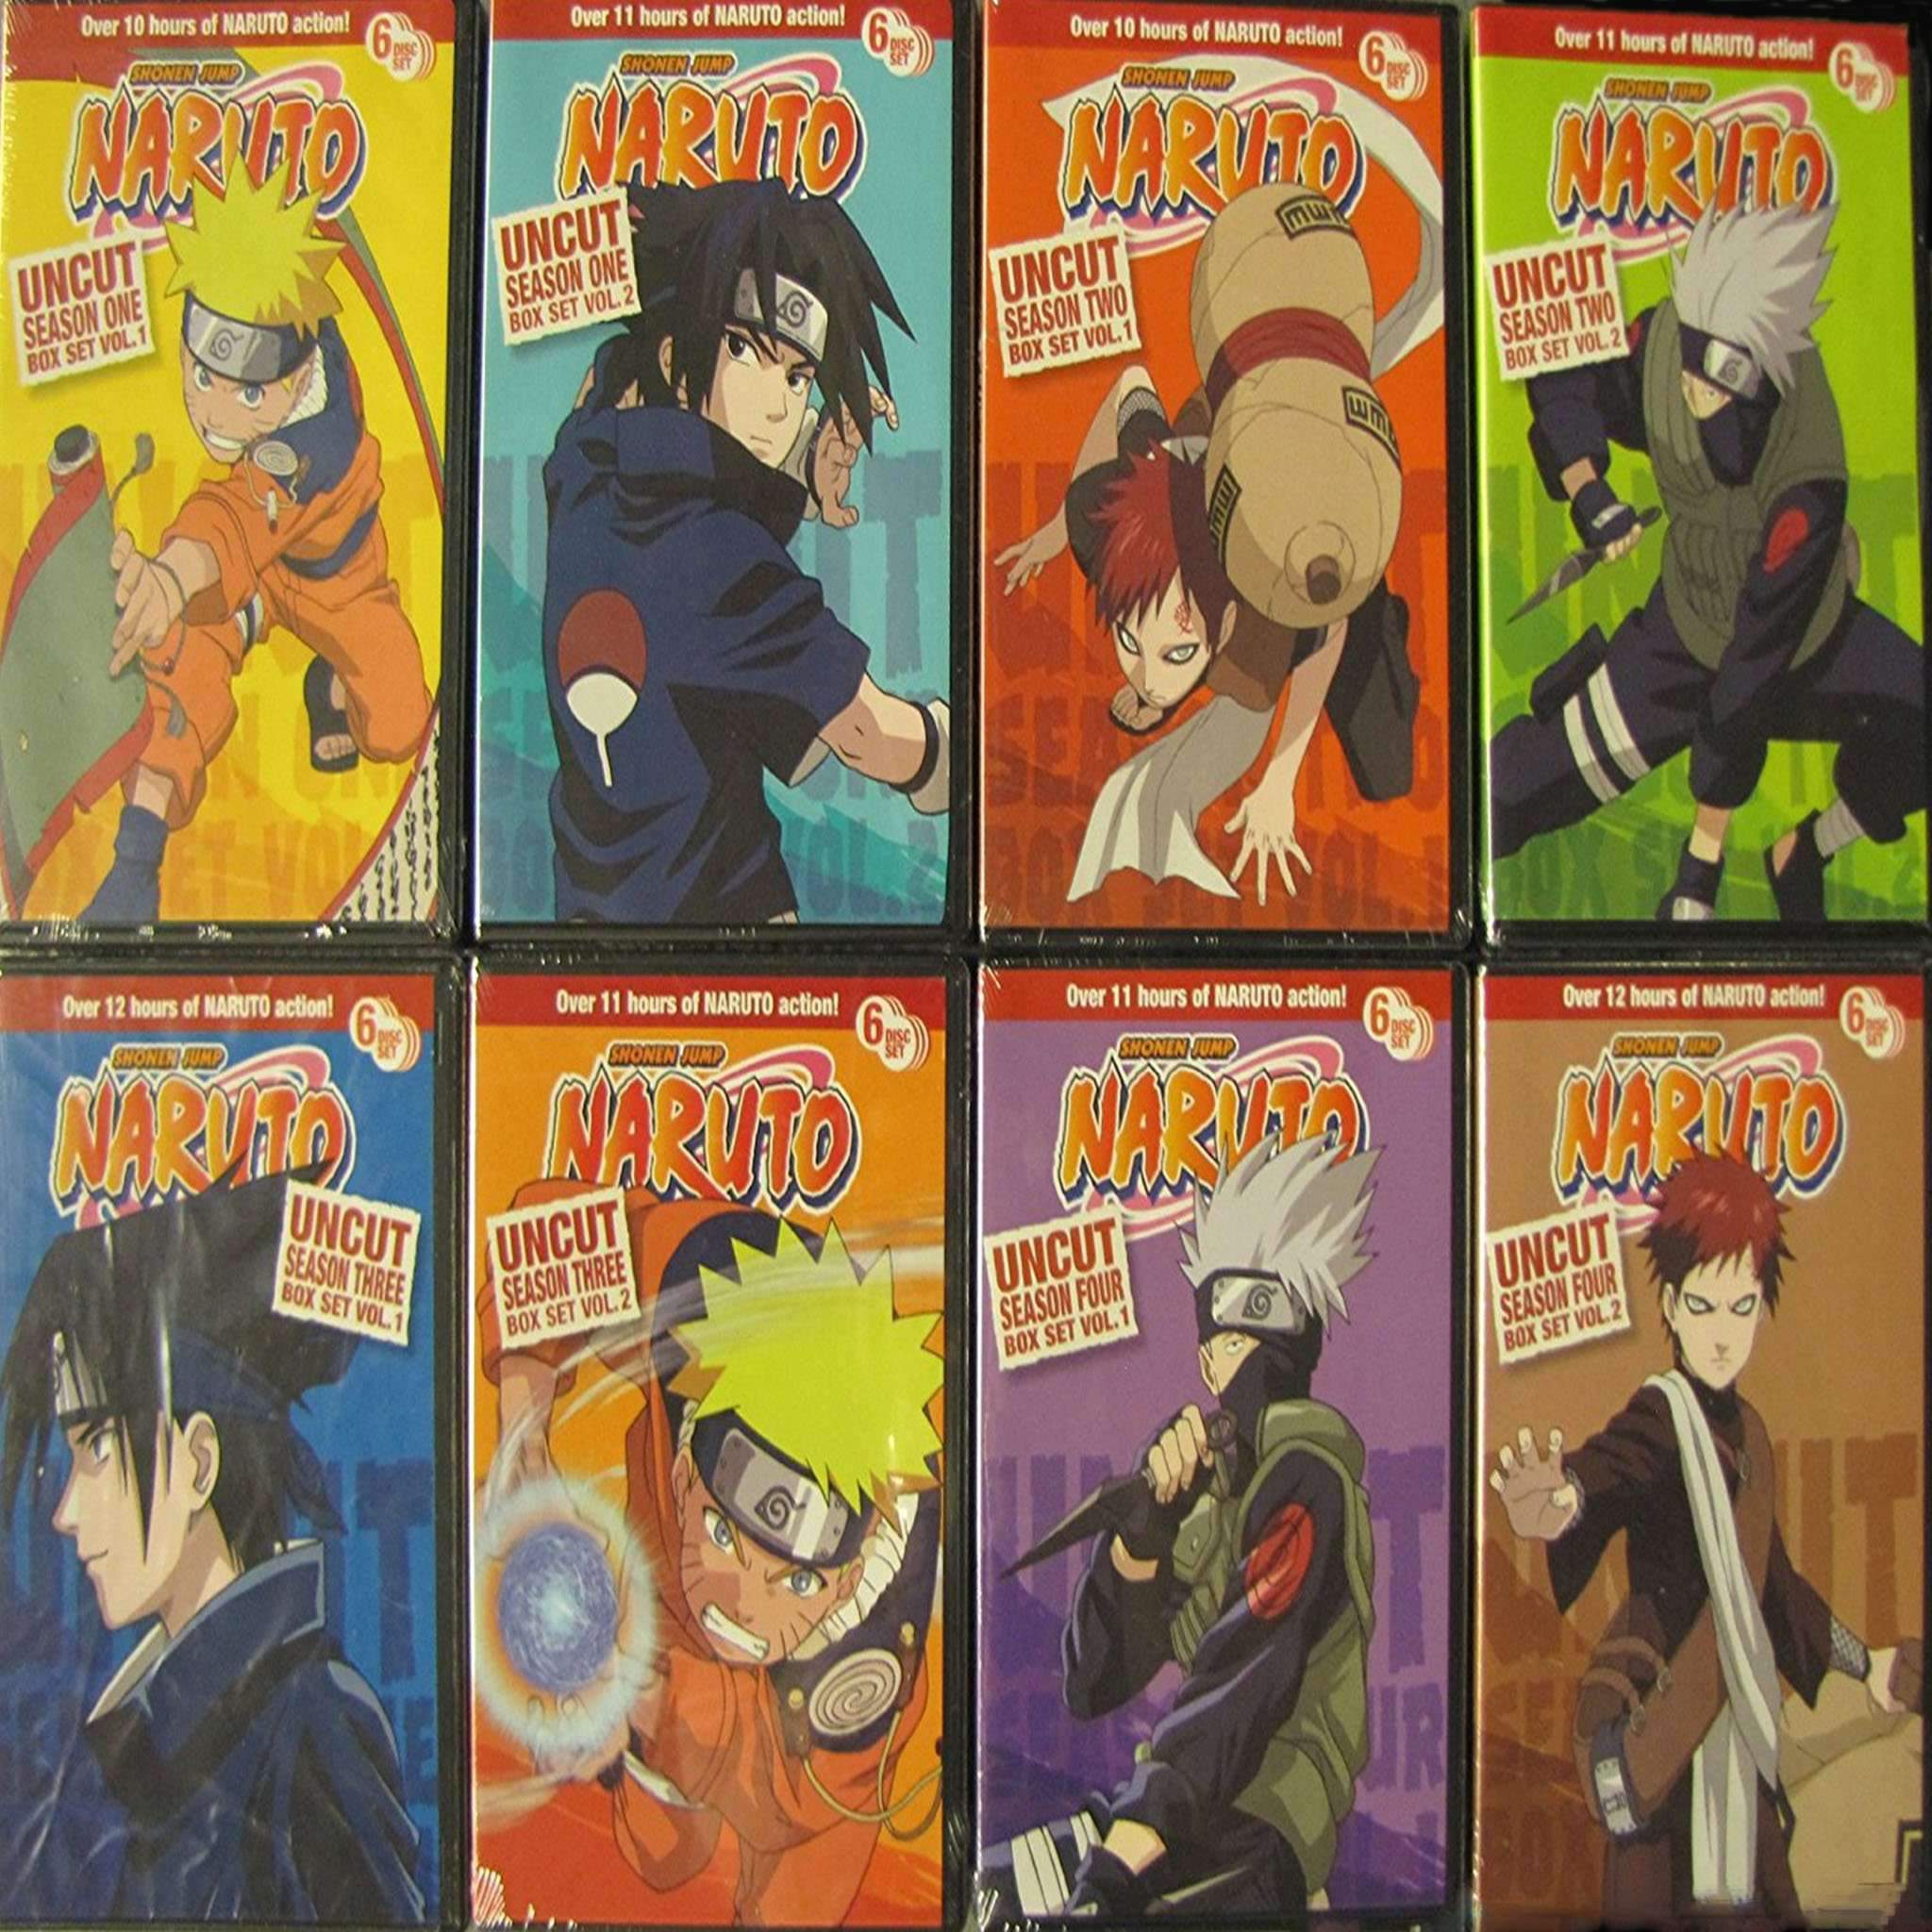 Ver Naruto Shippuden Uncut Season 2 Volume 1